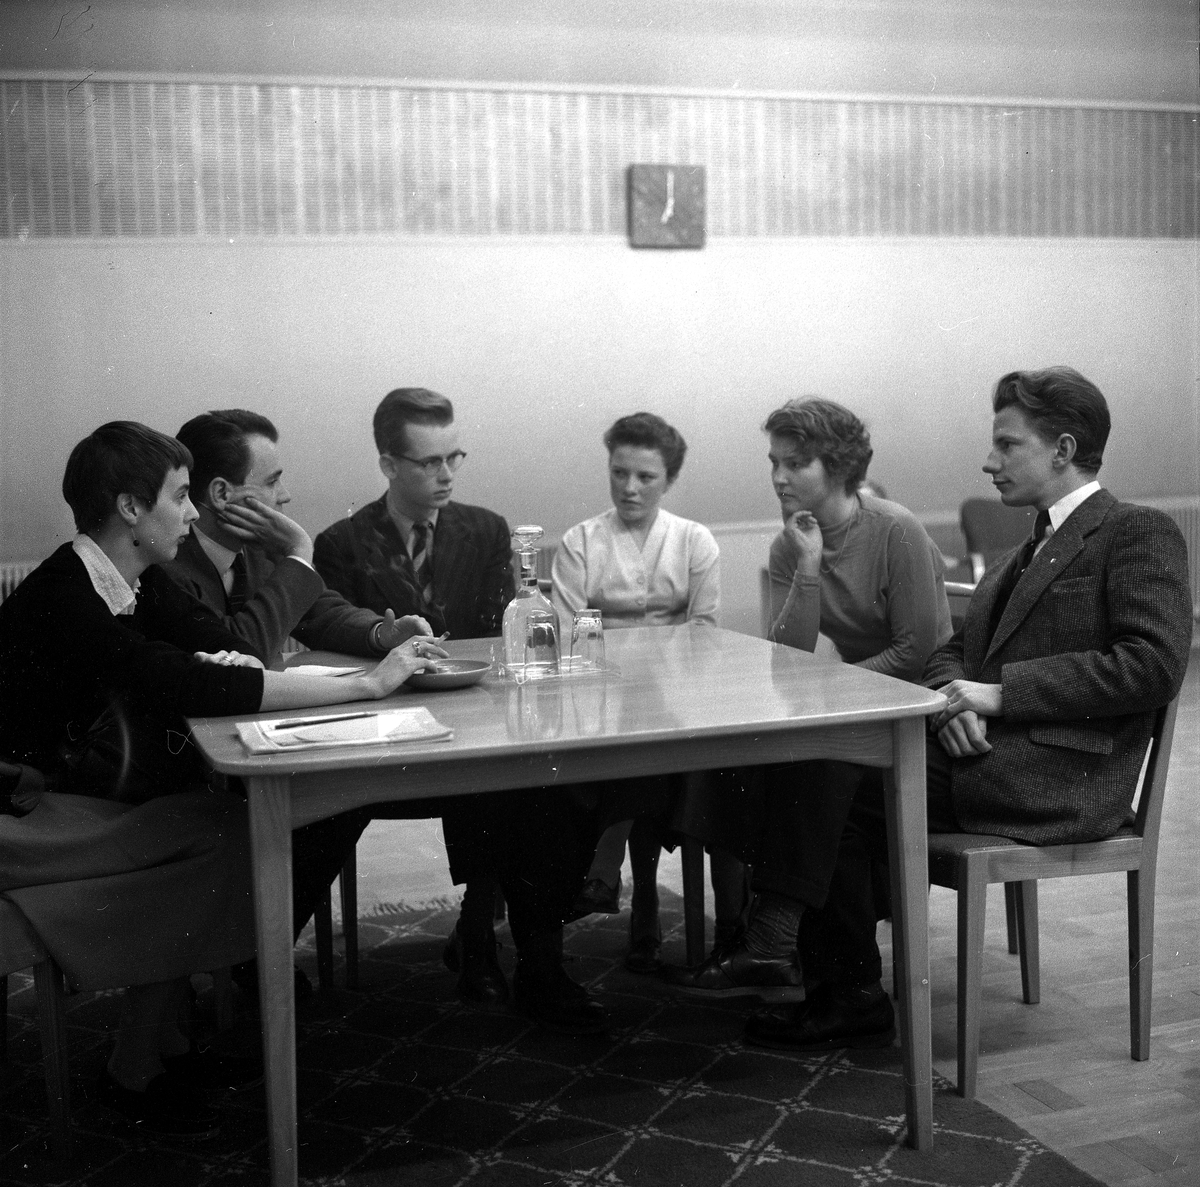 Landbygdens ungdom i Örebro radio.
December 1956.